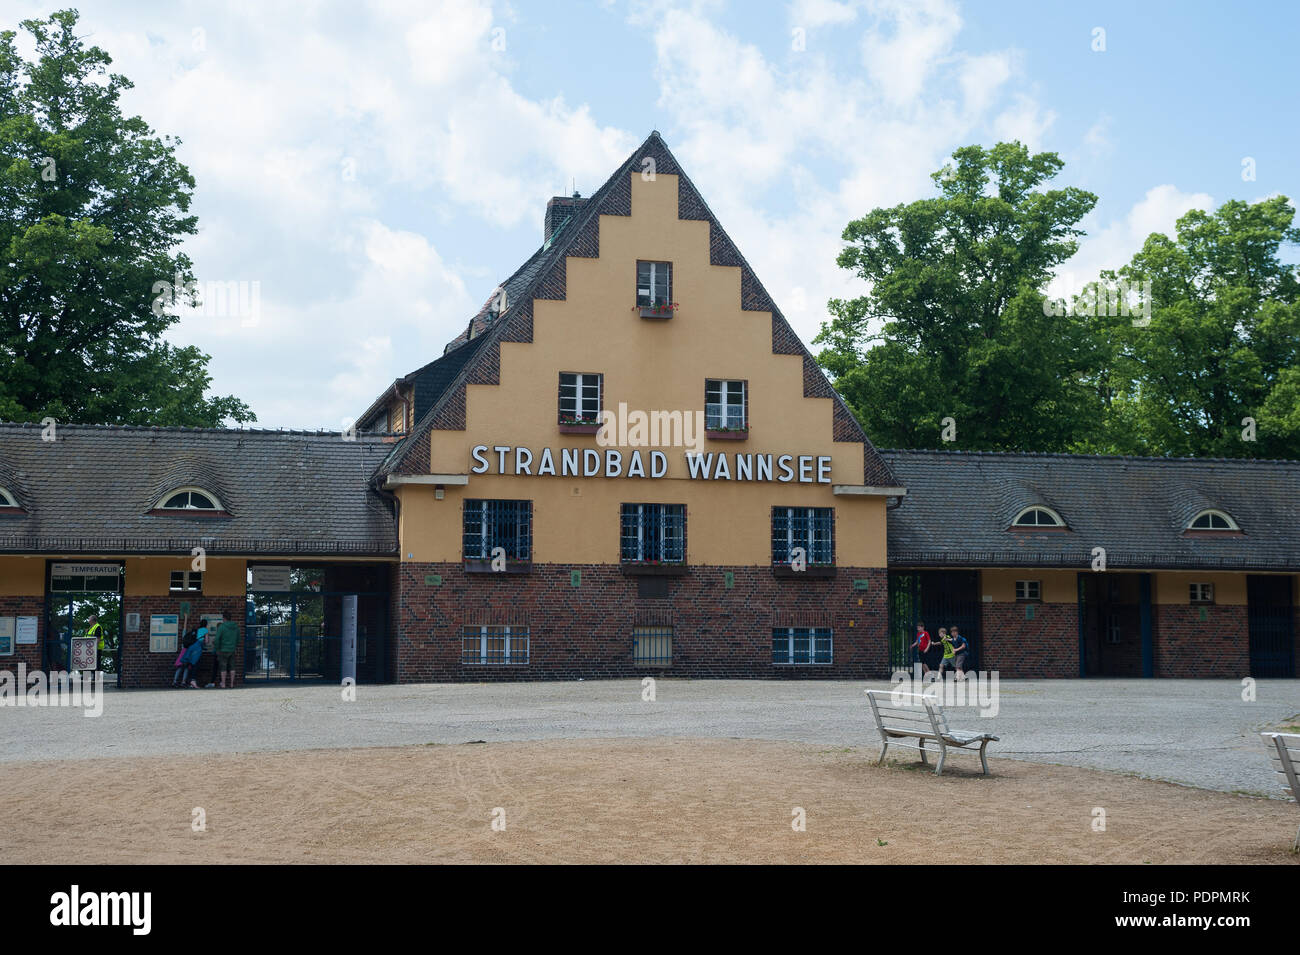 31.05.2017, Berlino, Germania, Europa - Una vista della zona di ingresso alla open-air lido Strandbad Wannsee in Steglitz-Zehlendorf. Foto Stock